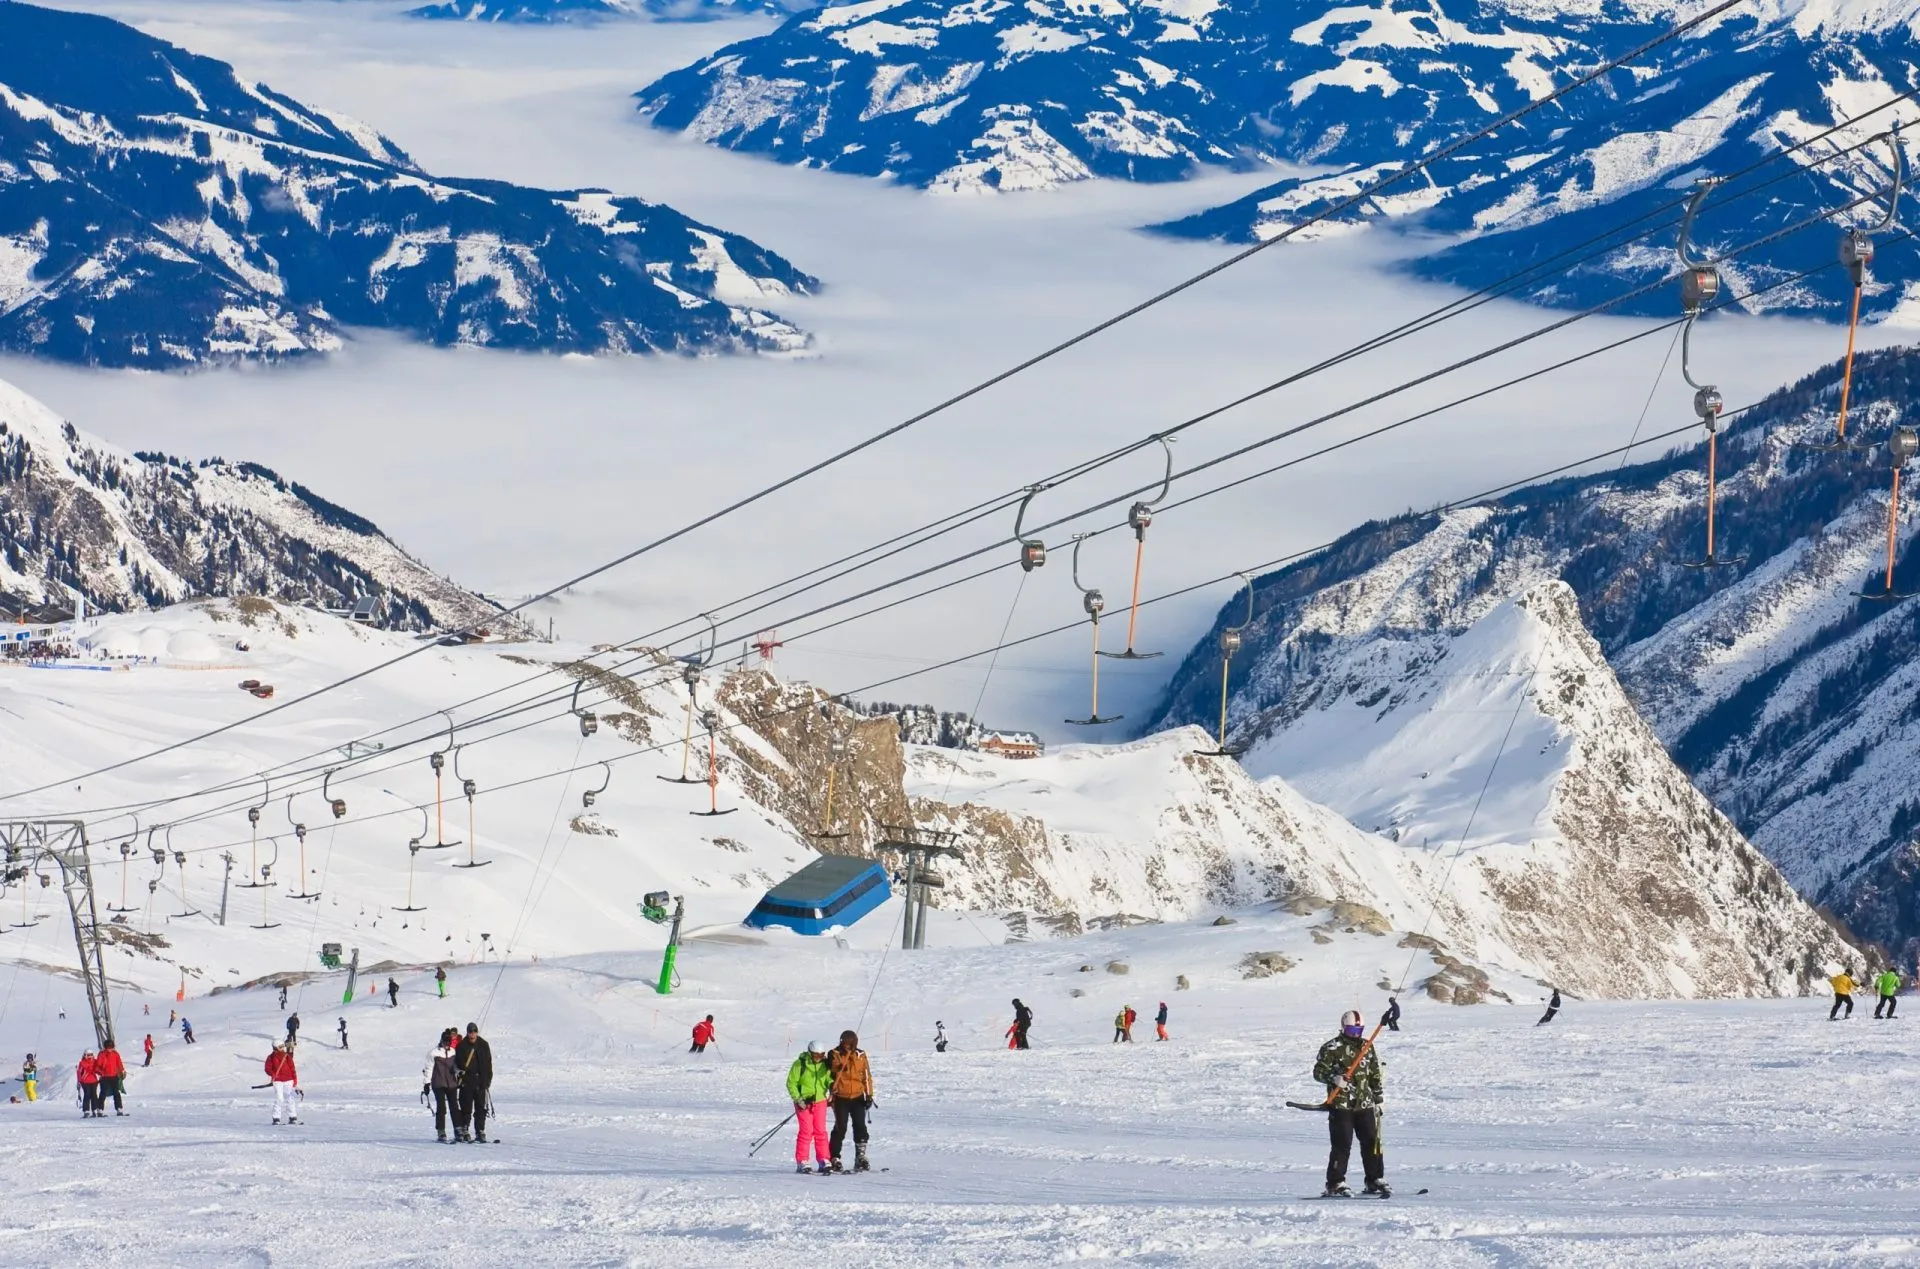 Ośrodek narciarski Kaprun, lodowiec Kitzsteinhorn. Austria